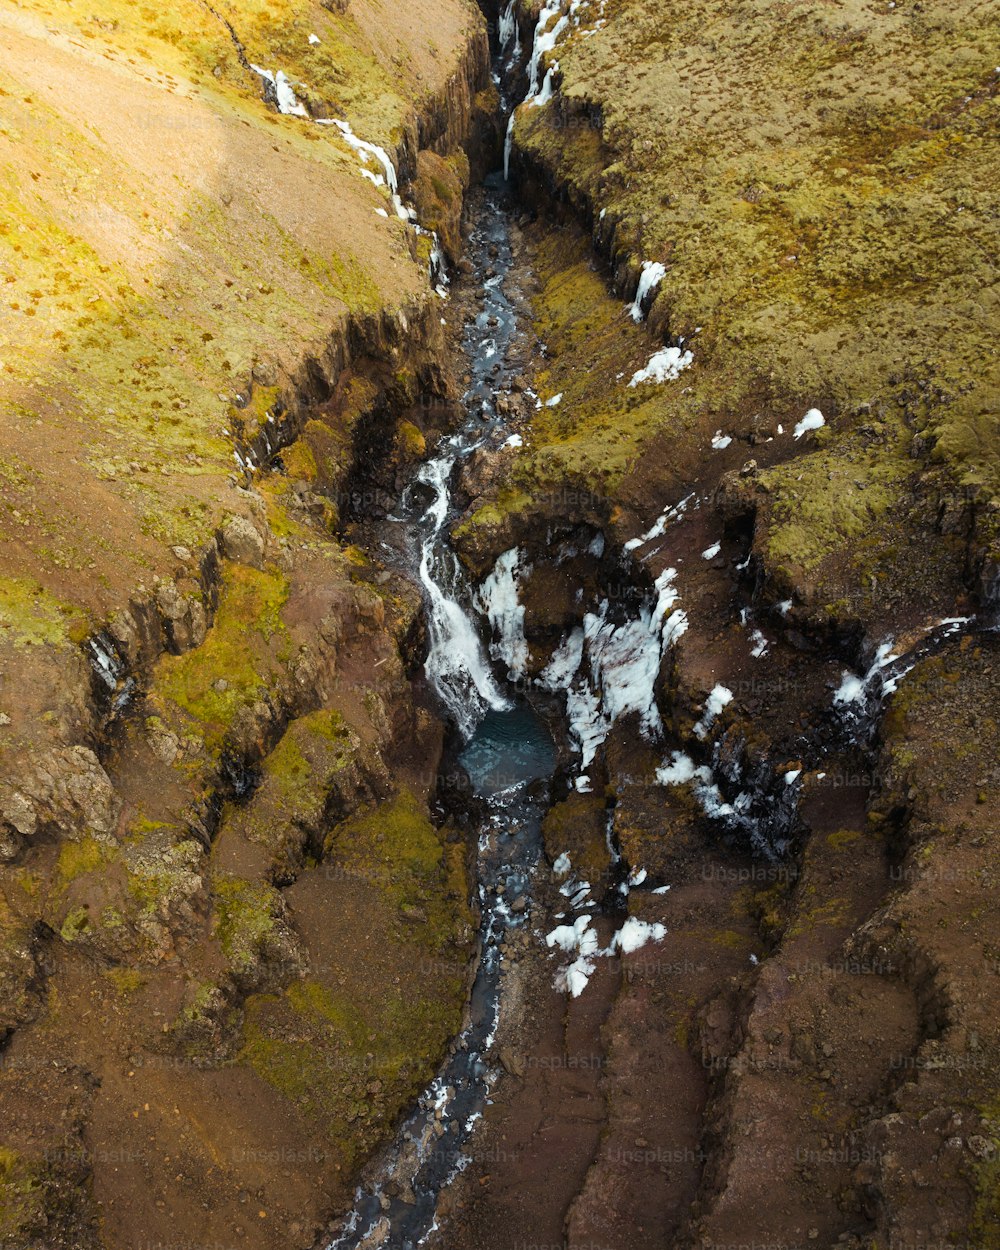 Una vista aérea de un arroyo que atraviesa un valle